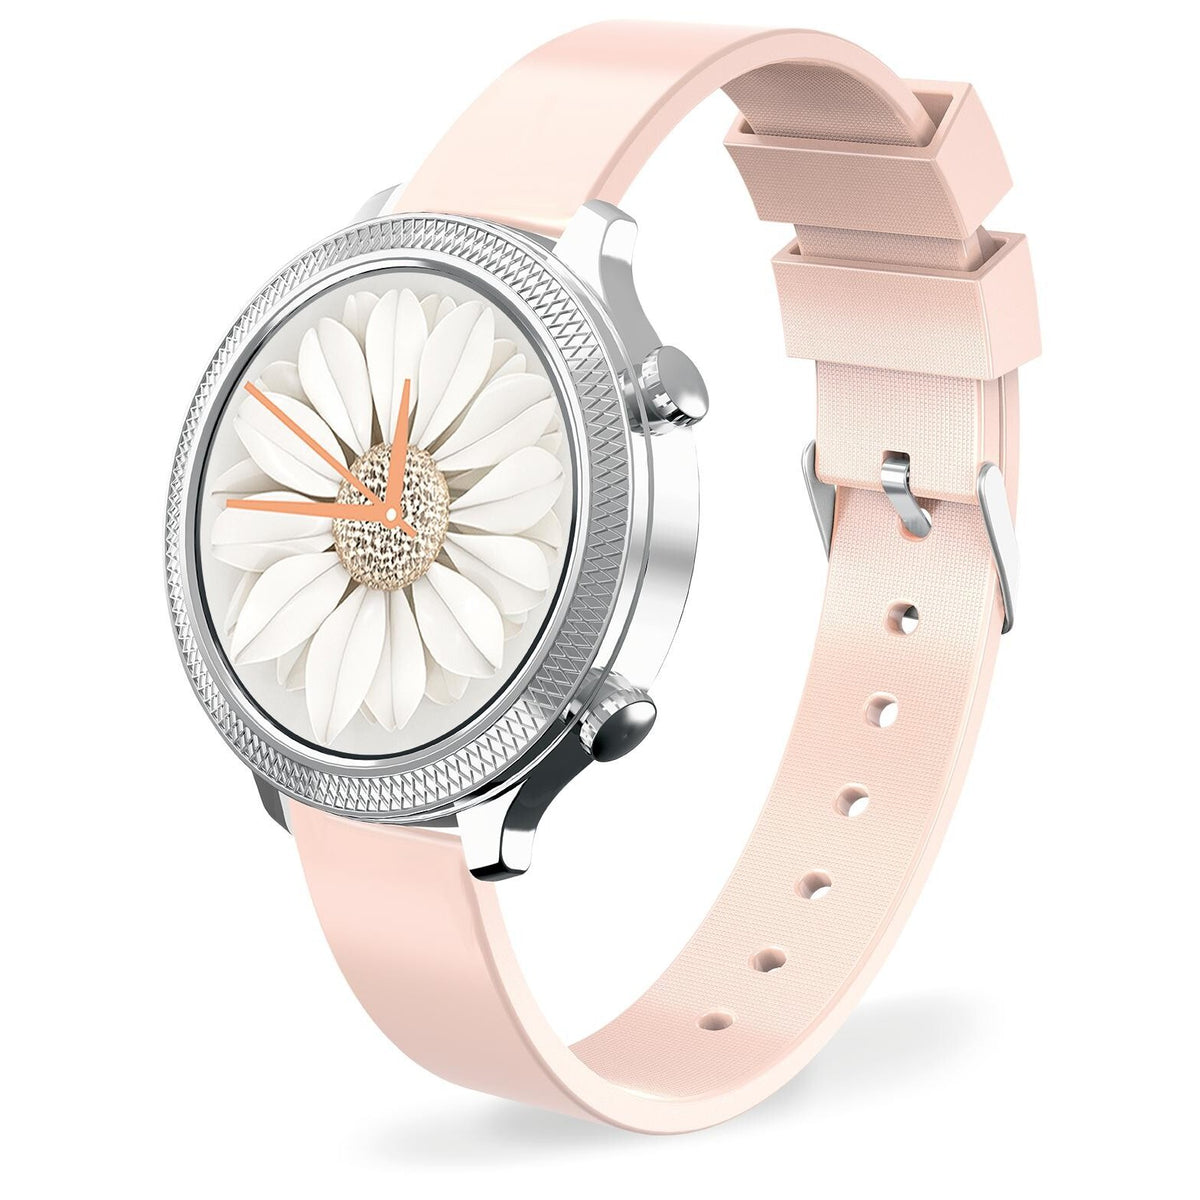 Dámské chytré hodinky Aligator Watch Lady, 2x řemínek, stříbrná P